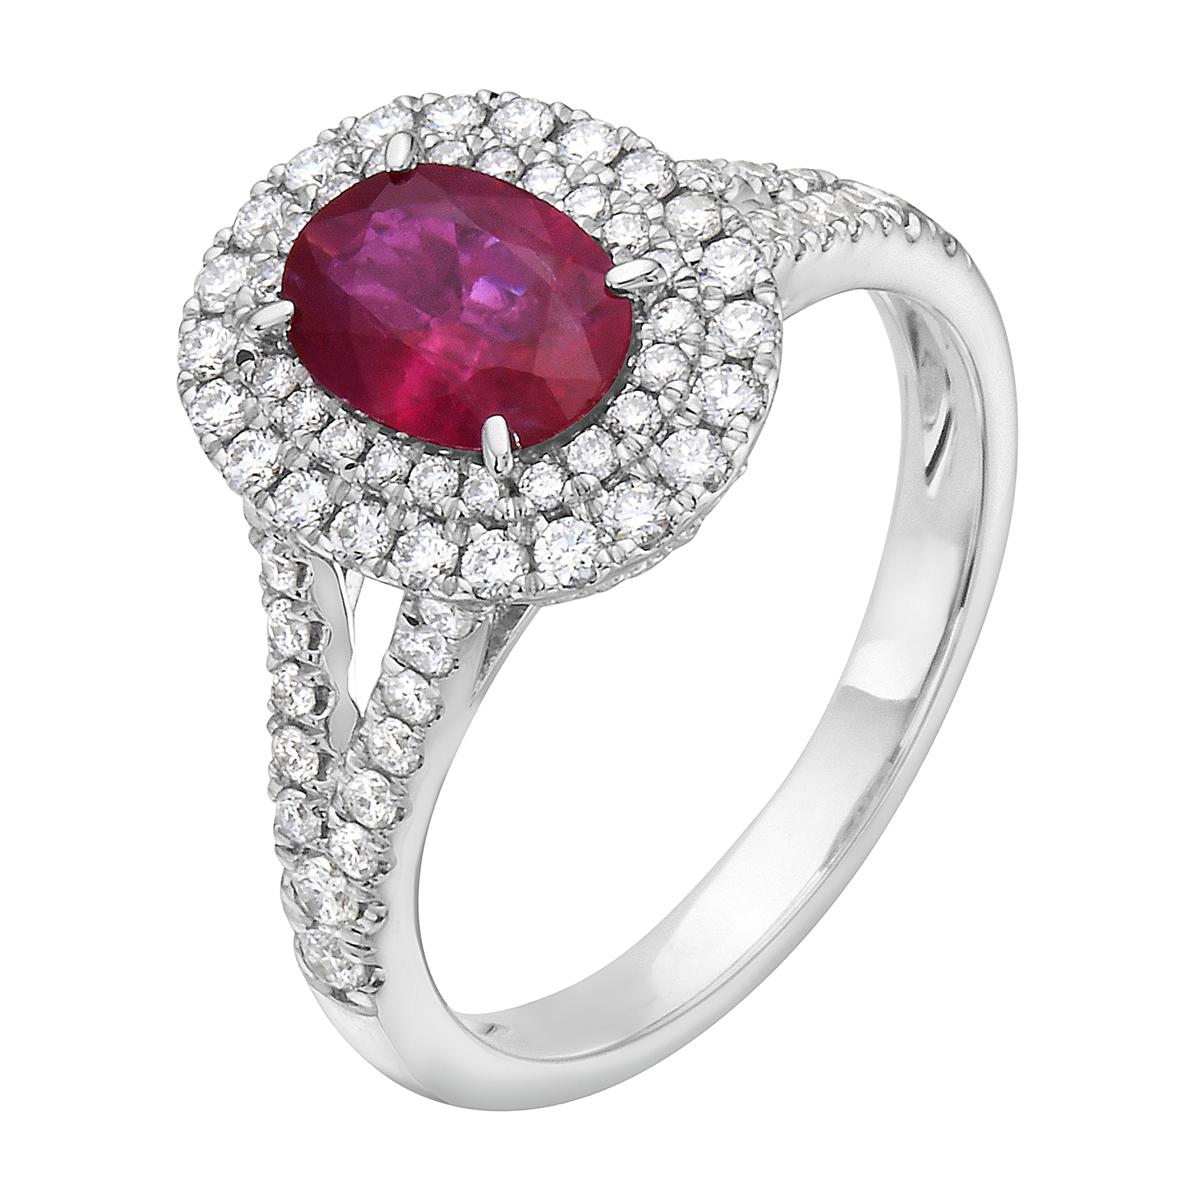 Bei diesem exquisiten Ring mit Diamanten und Rubinen stehen Stil und Glamour im Vordergrund. Dieser Ring mit 18 Karat Diamanten und Rubinen besteht aus 4,1 Gramm Gold. Dieser Ring ist mit Diamanten der Farbe VS2, G, bestehend aus 72 Diamanten von